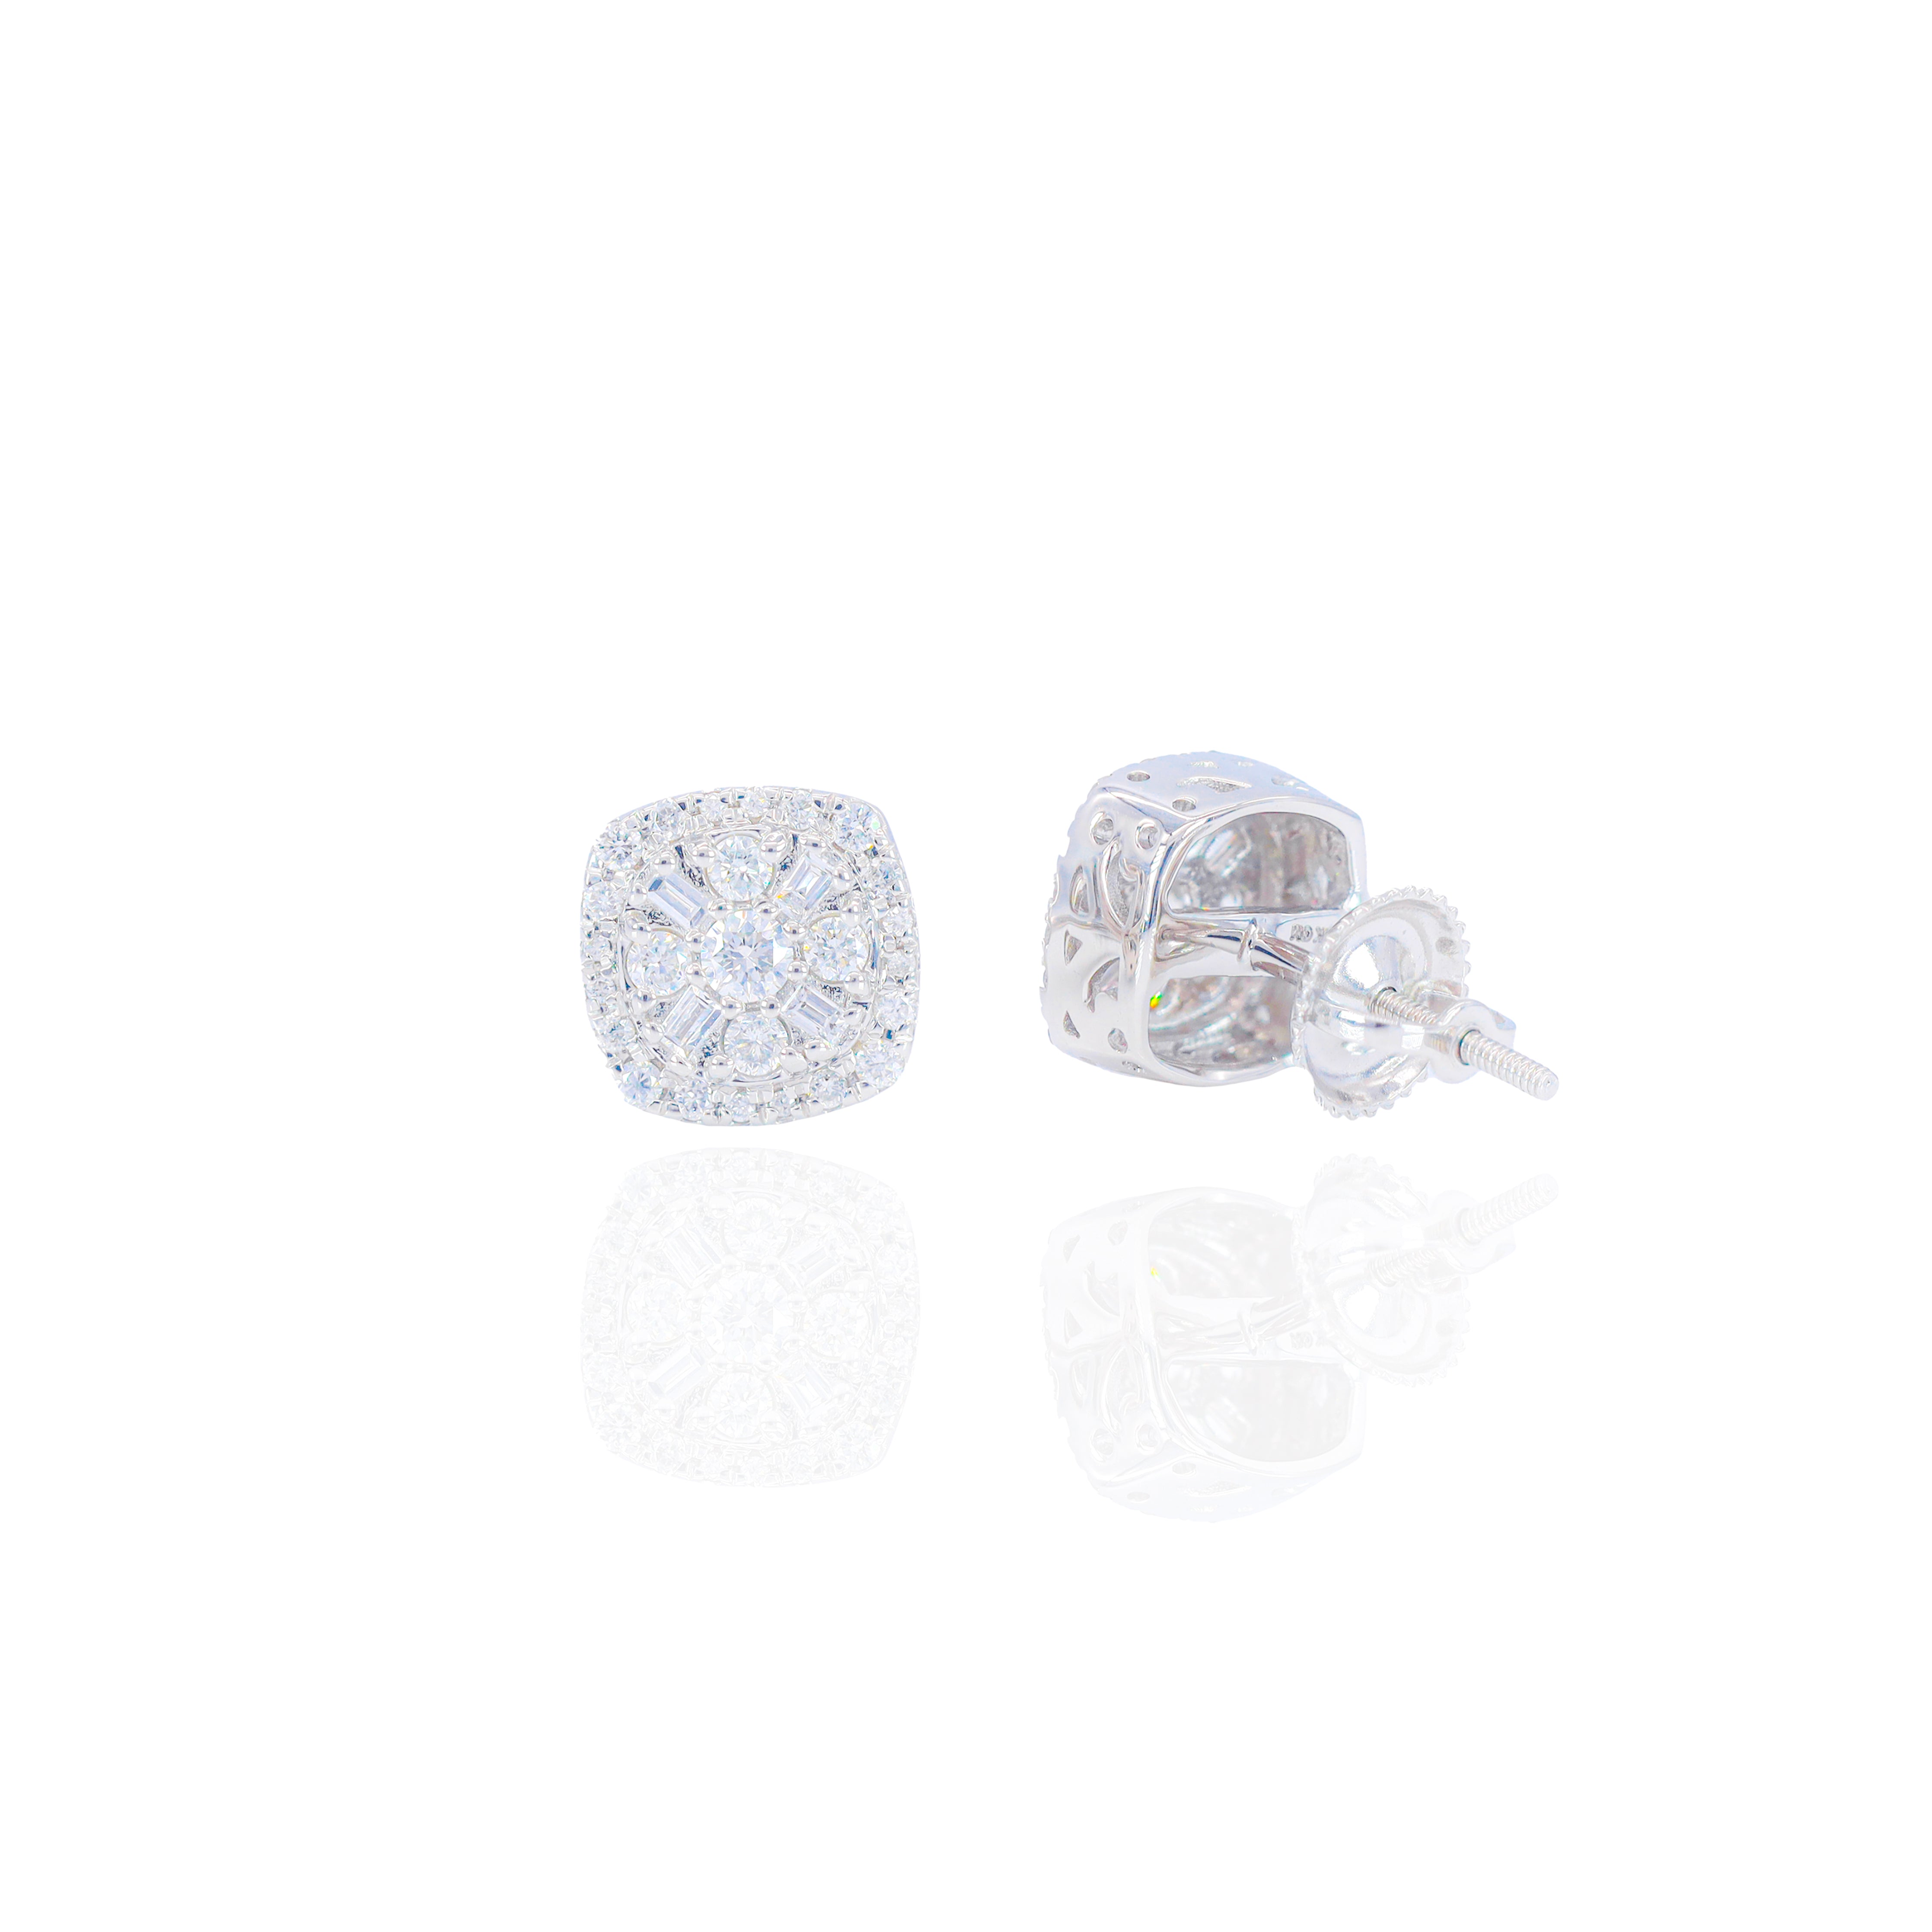 Alternating Round & Baguette Diamond Square Earrings